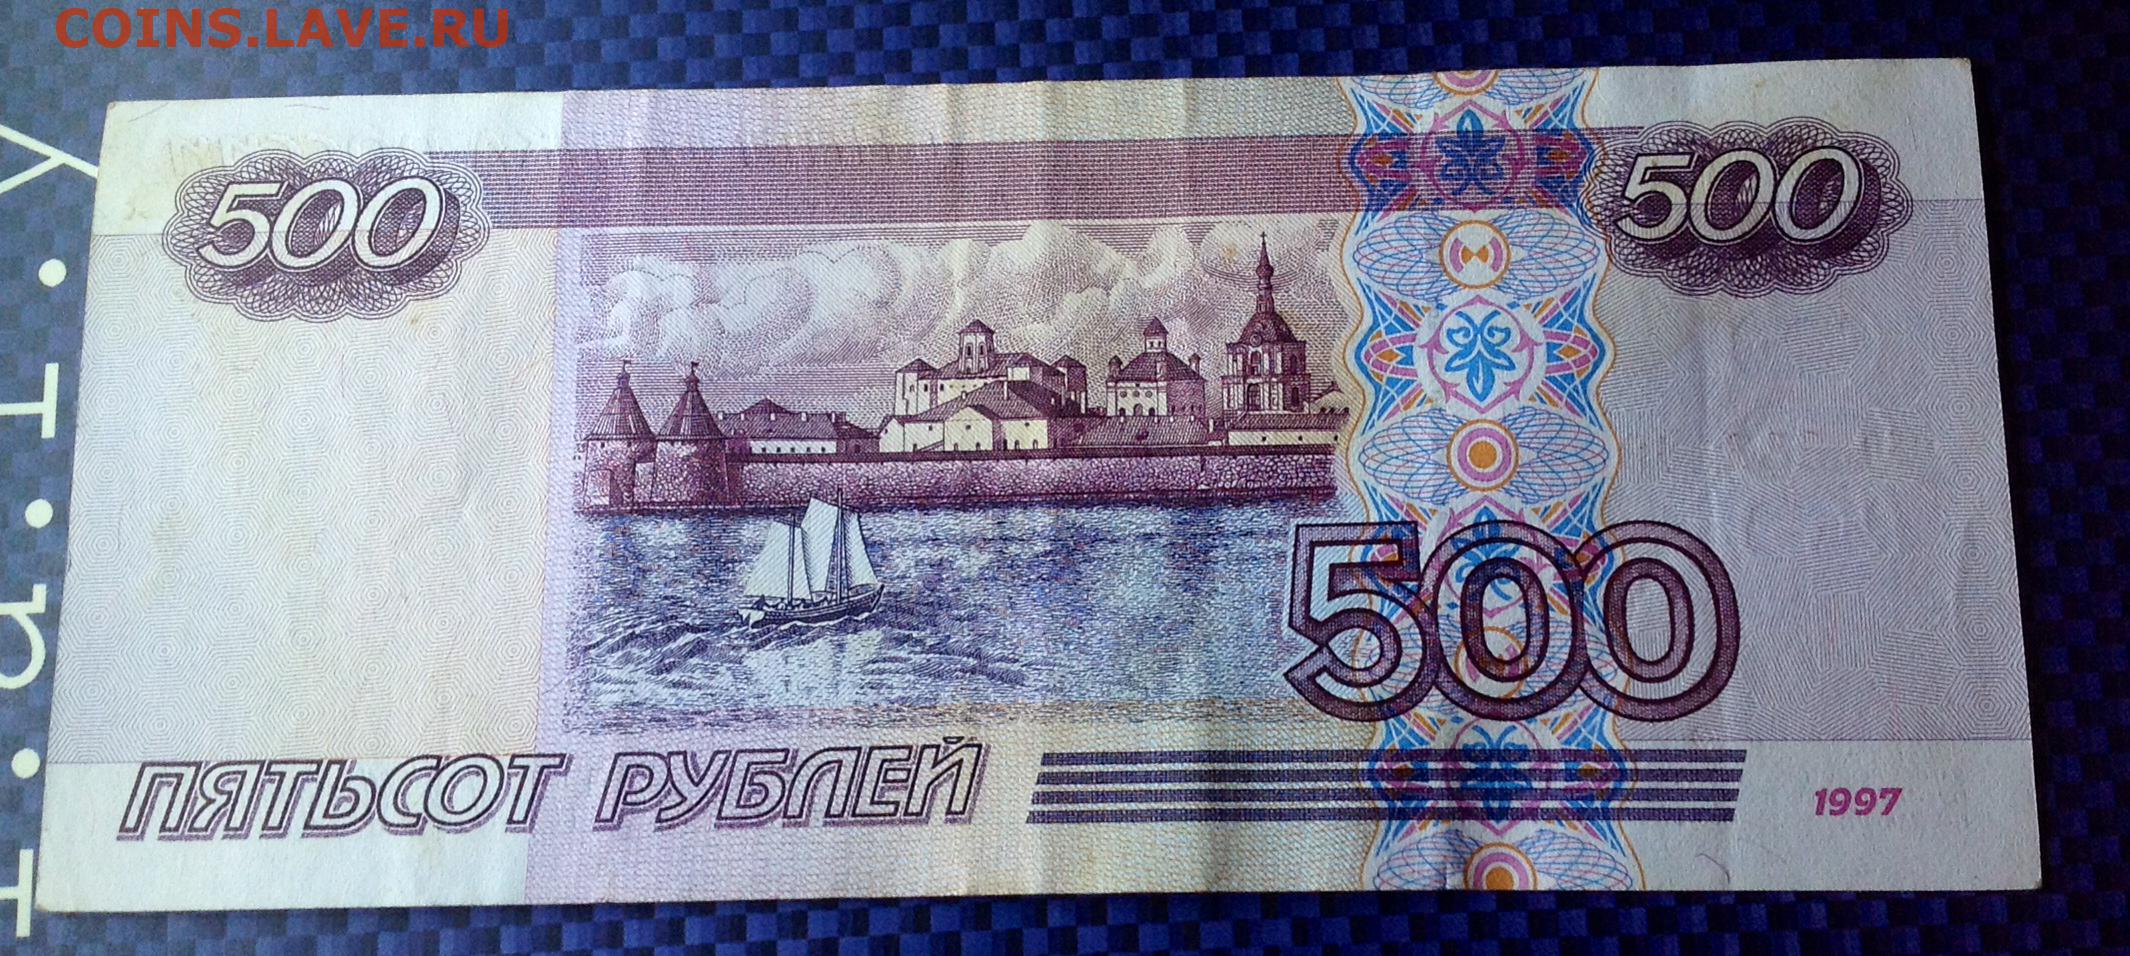 500 рублей за друга. 500 Рублей 1997 модификация 2001. 500 Рублей 1997 года модификация 2001. 500 Рублей 2001 года модификации. 500 Рублей 1997 года бумажные модификация 2001.